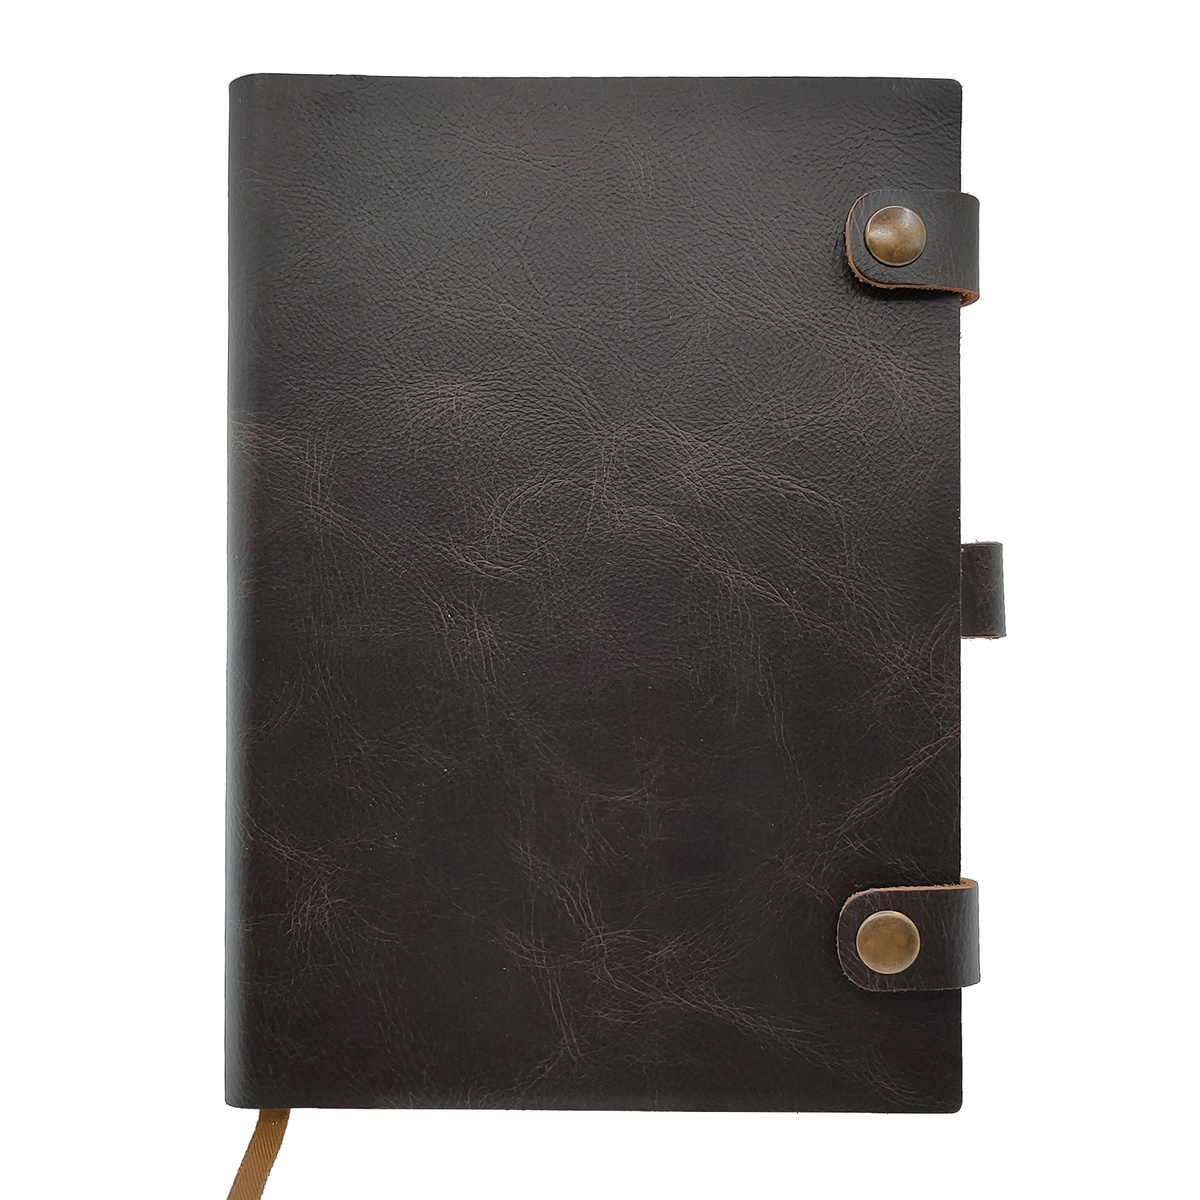 Кожаный ежедневник Shiva Leather с отделкой Pull-Up, с застежкой на две кнопки и хлястиком под ручку